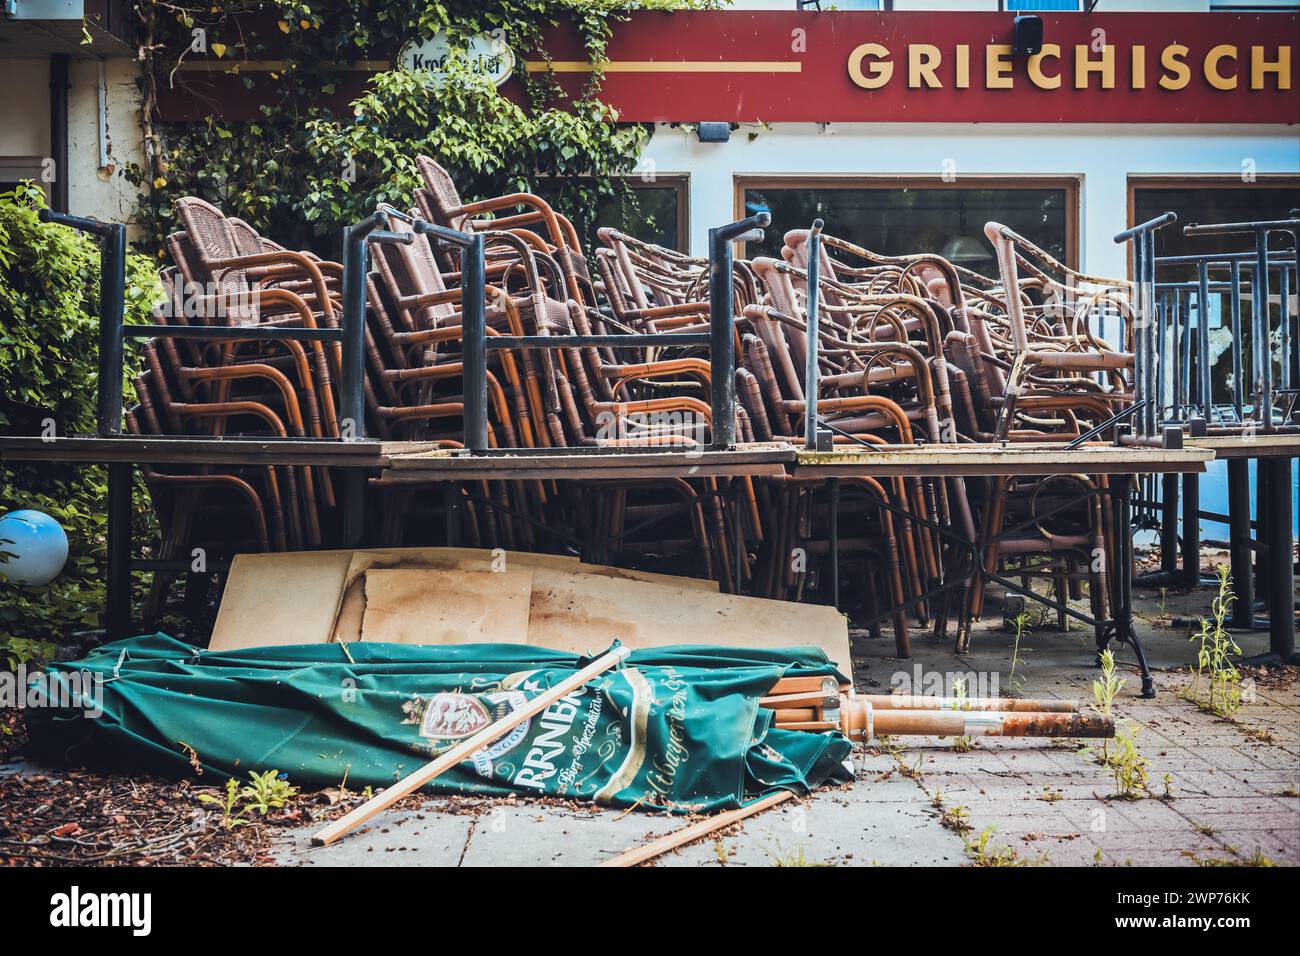 Gastro-Krise: Gestapelte Stühle vor einem geschlossenen Restaurant in Timmendorfer Strand, Schleswig-Holstein, Deutschland Foto Stock